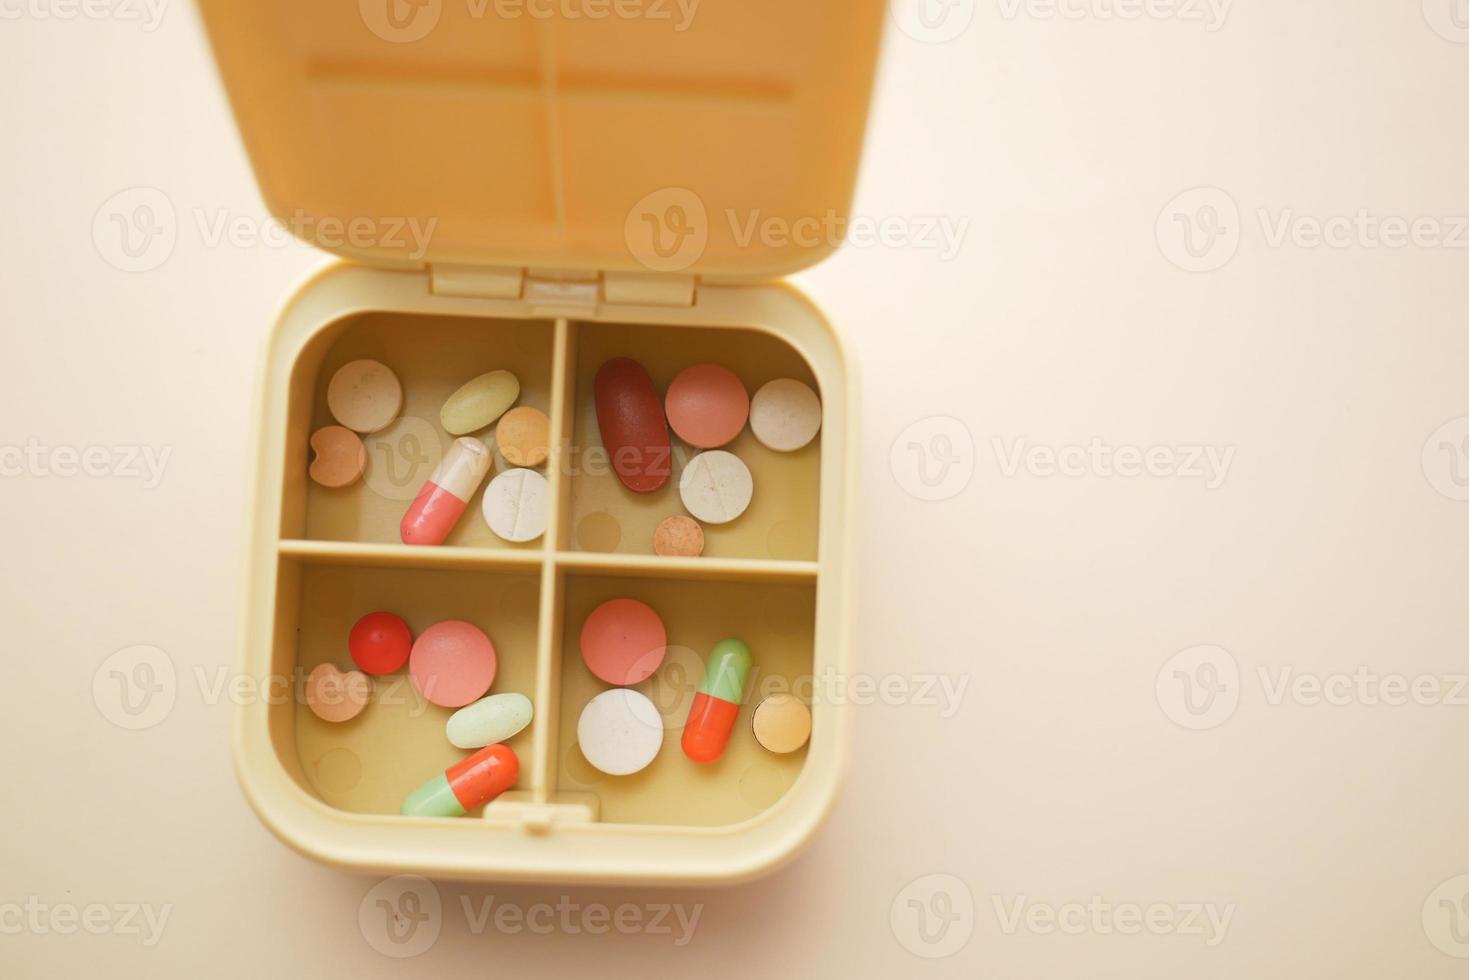 närbild av medicinska piller i en piller box på färgbakgrund foto